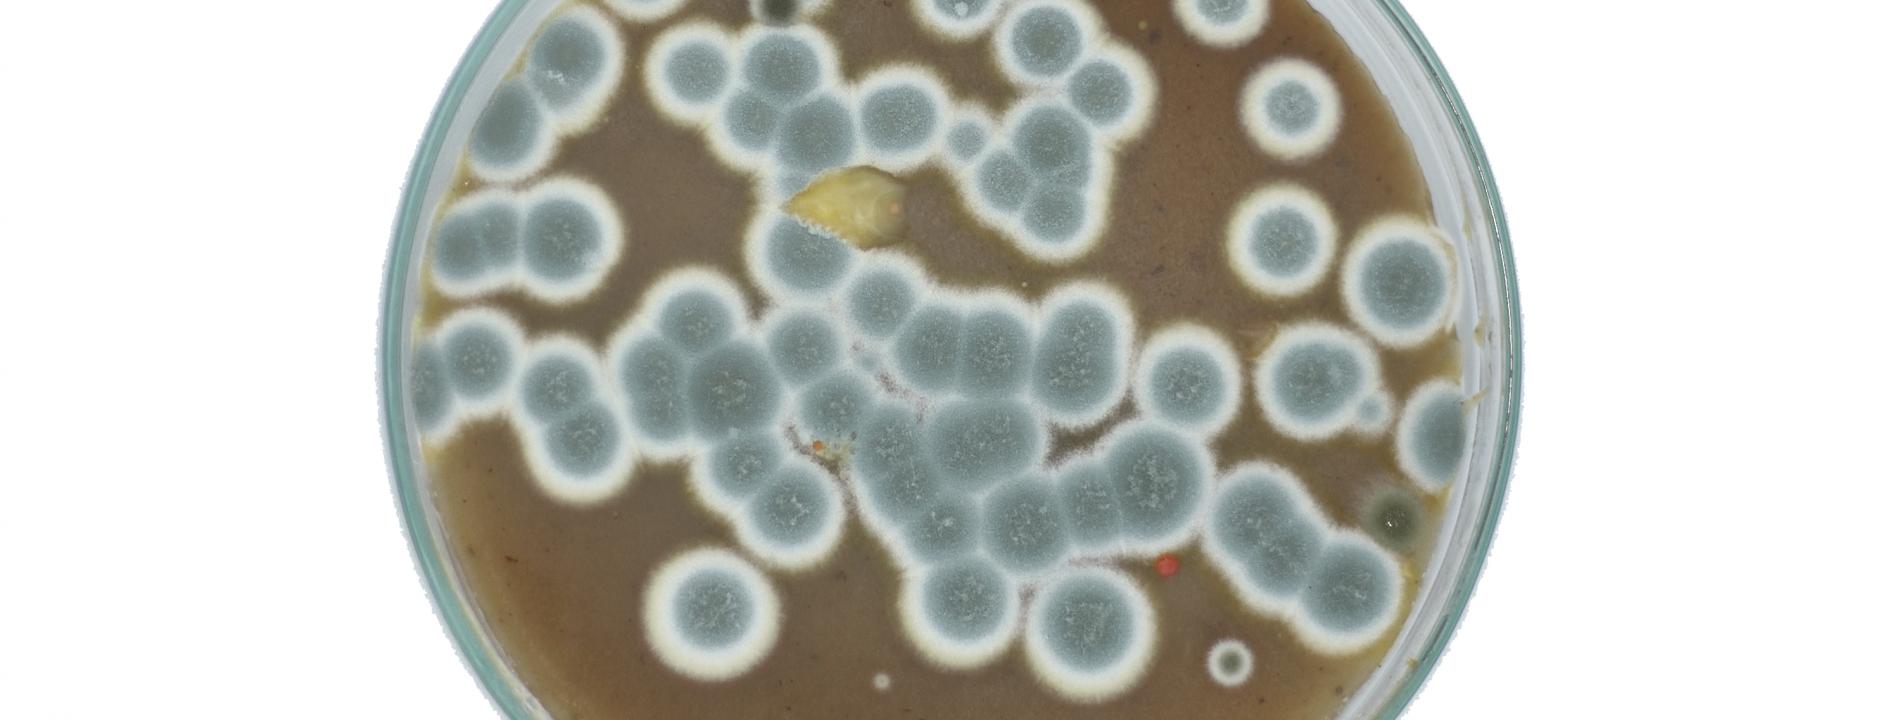 Bacterias en un petri para hacer tintes